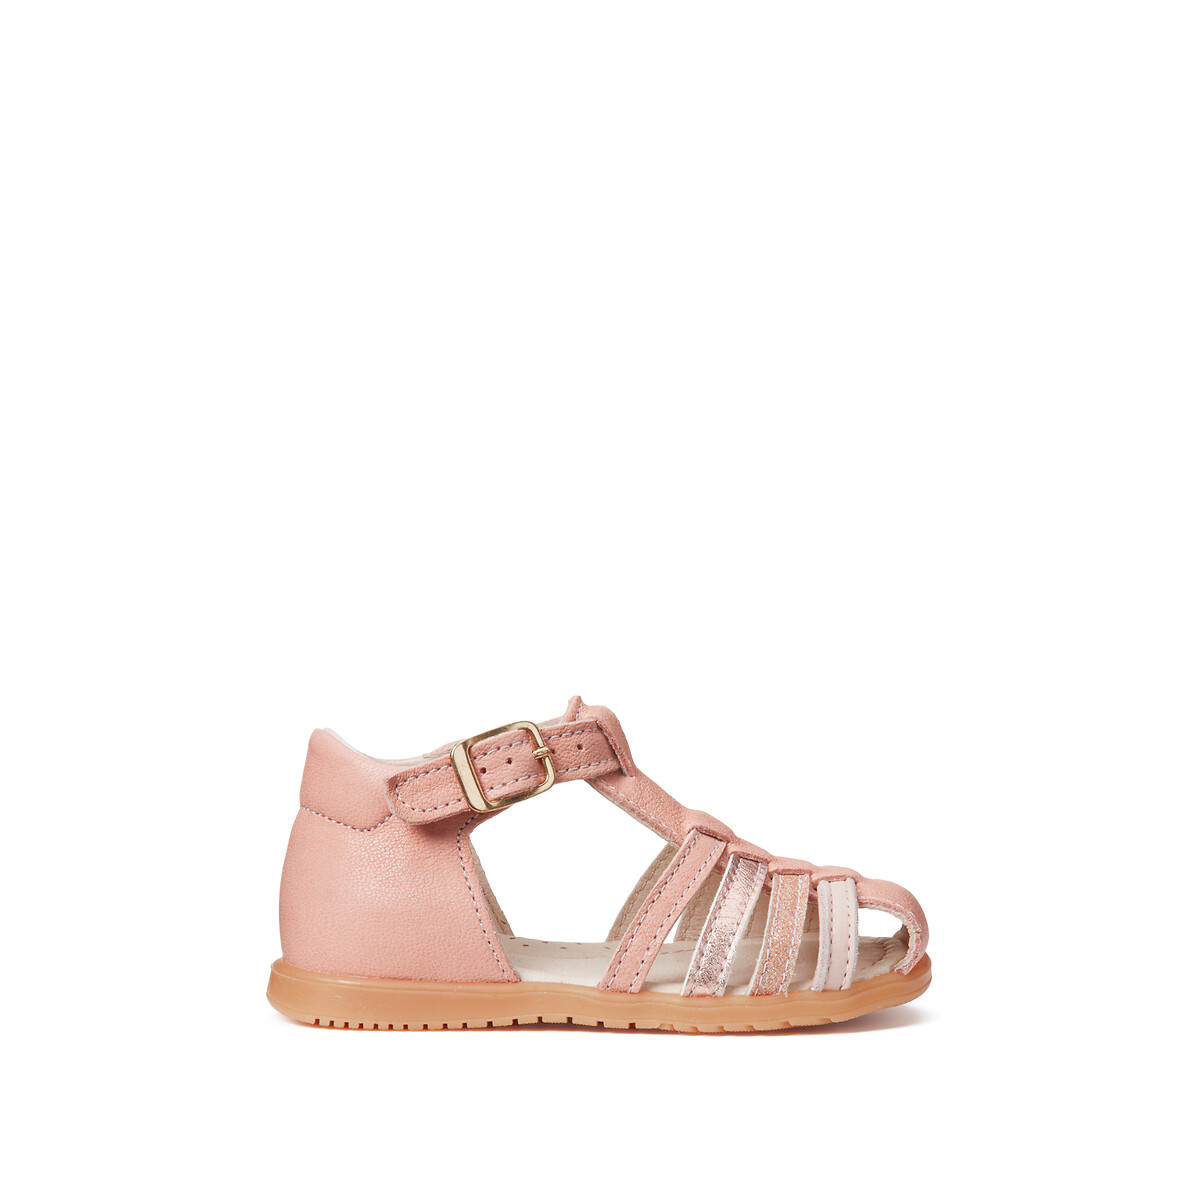 Børne første skridt sandaler i læder pink La Redoute Collections La Redoute